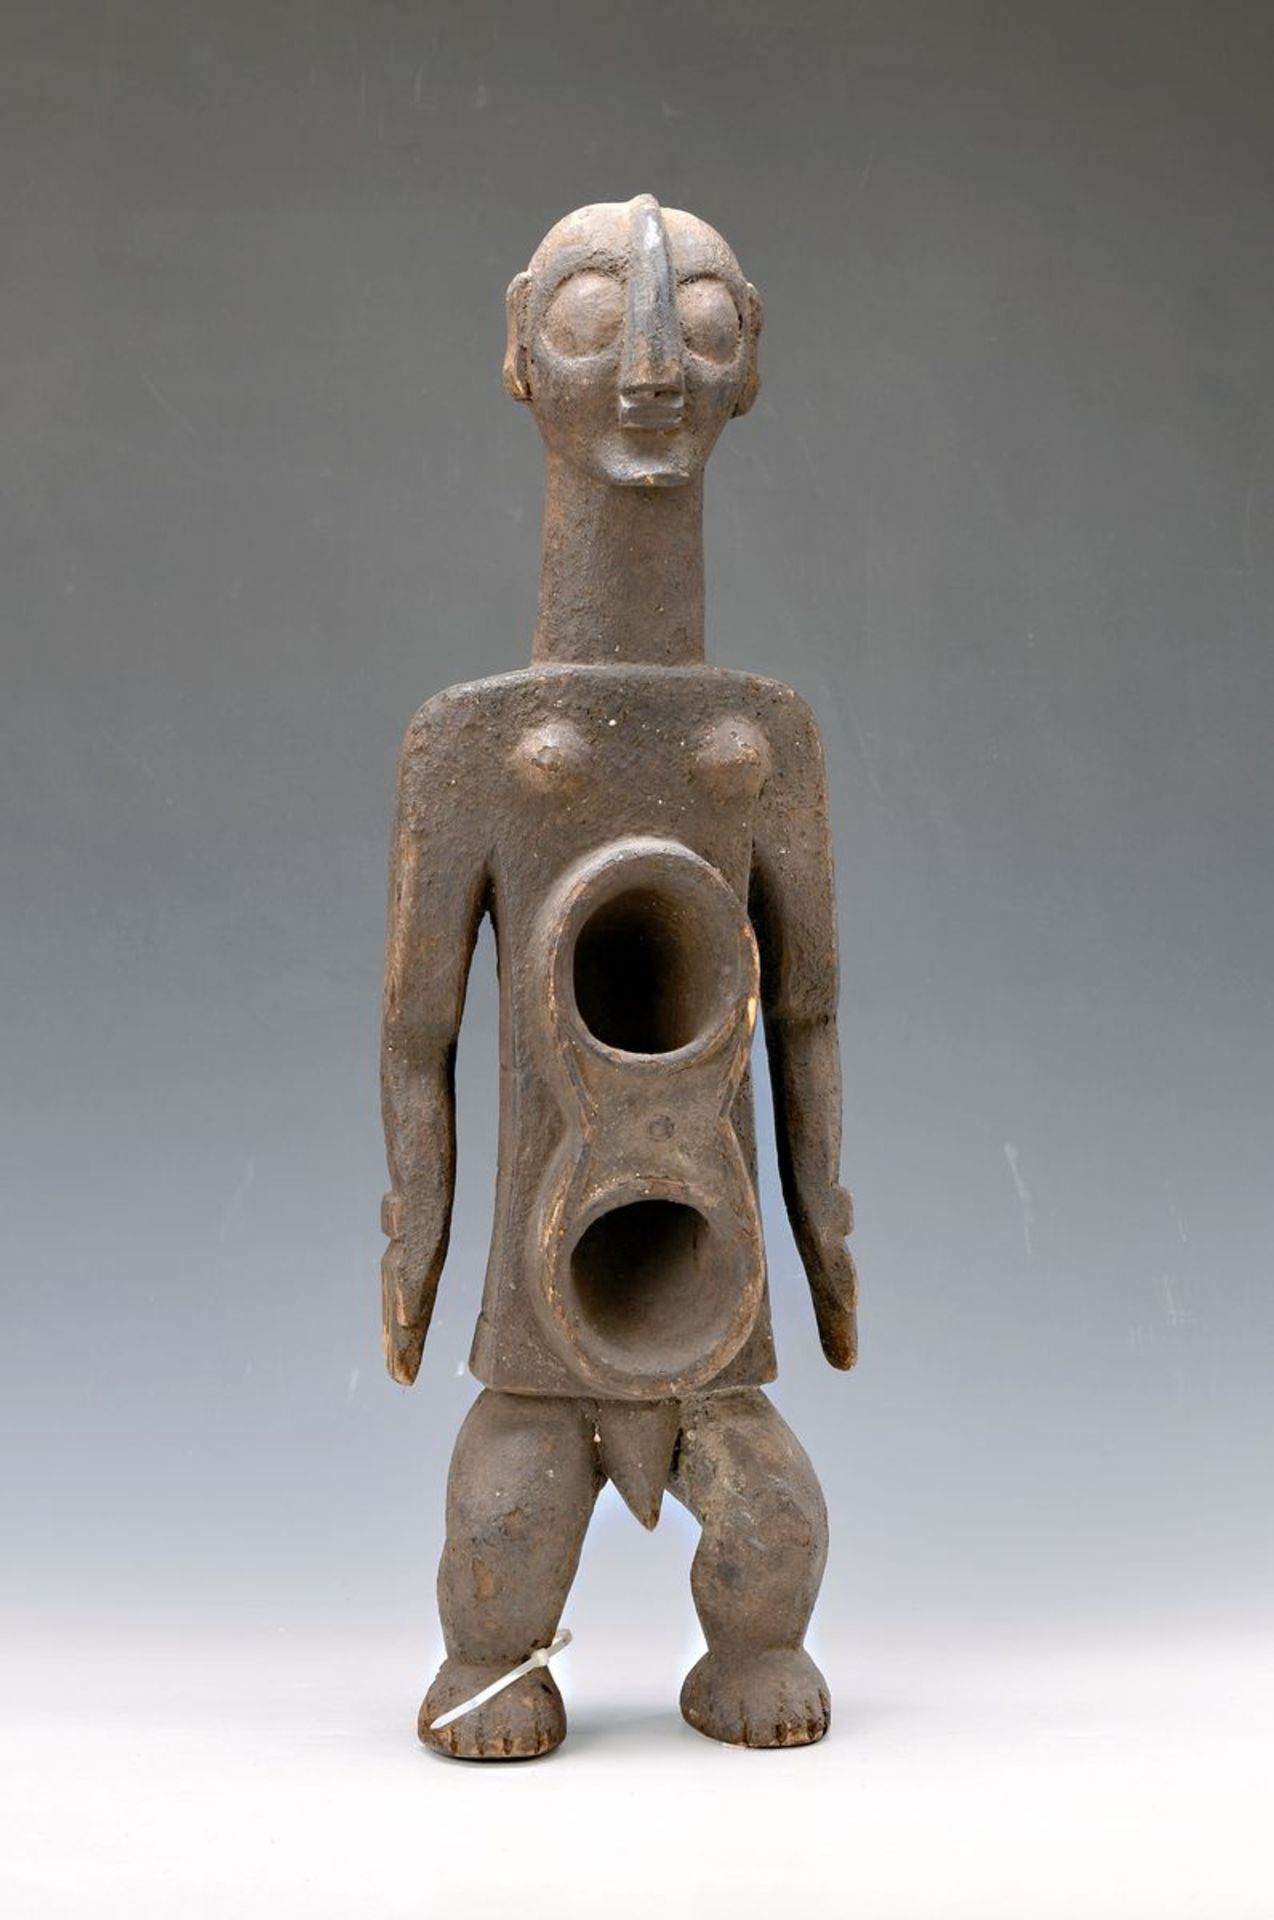 Fetischfigur, Koro/Nigeria, ca. 50 Jahre alt, Weichholz, gewachsene Patina, zwei Öffnungen zum